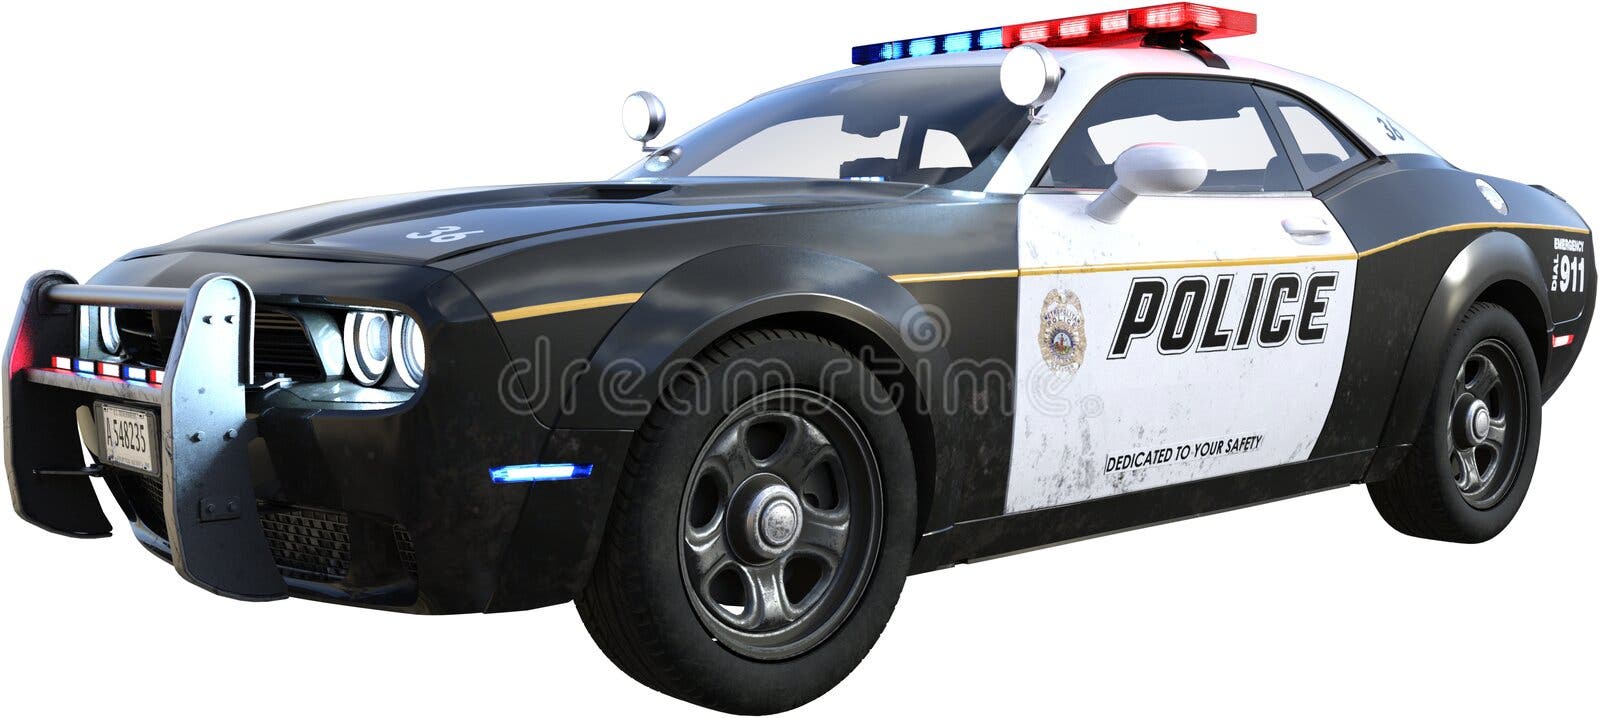 Ilustração Do Desenho Do Carro De Polícia Ilustração Stock - Ilustração de  oficial, sinal: 115637331